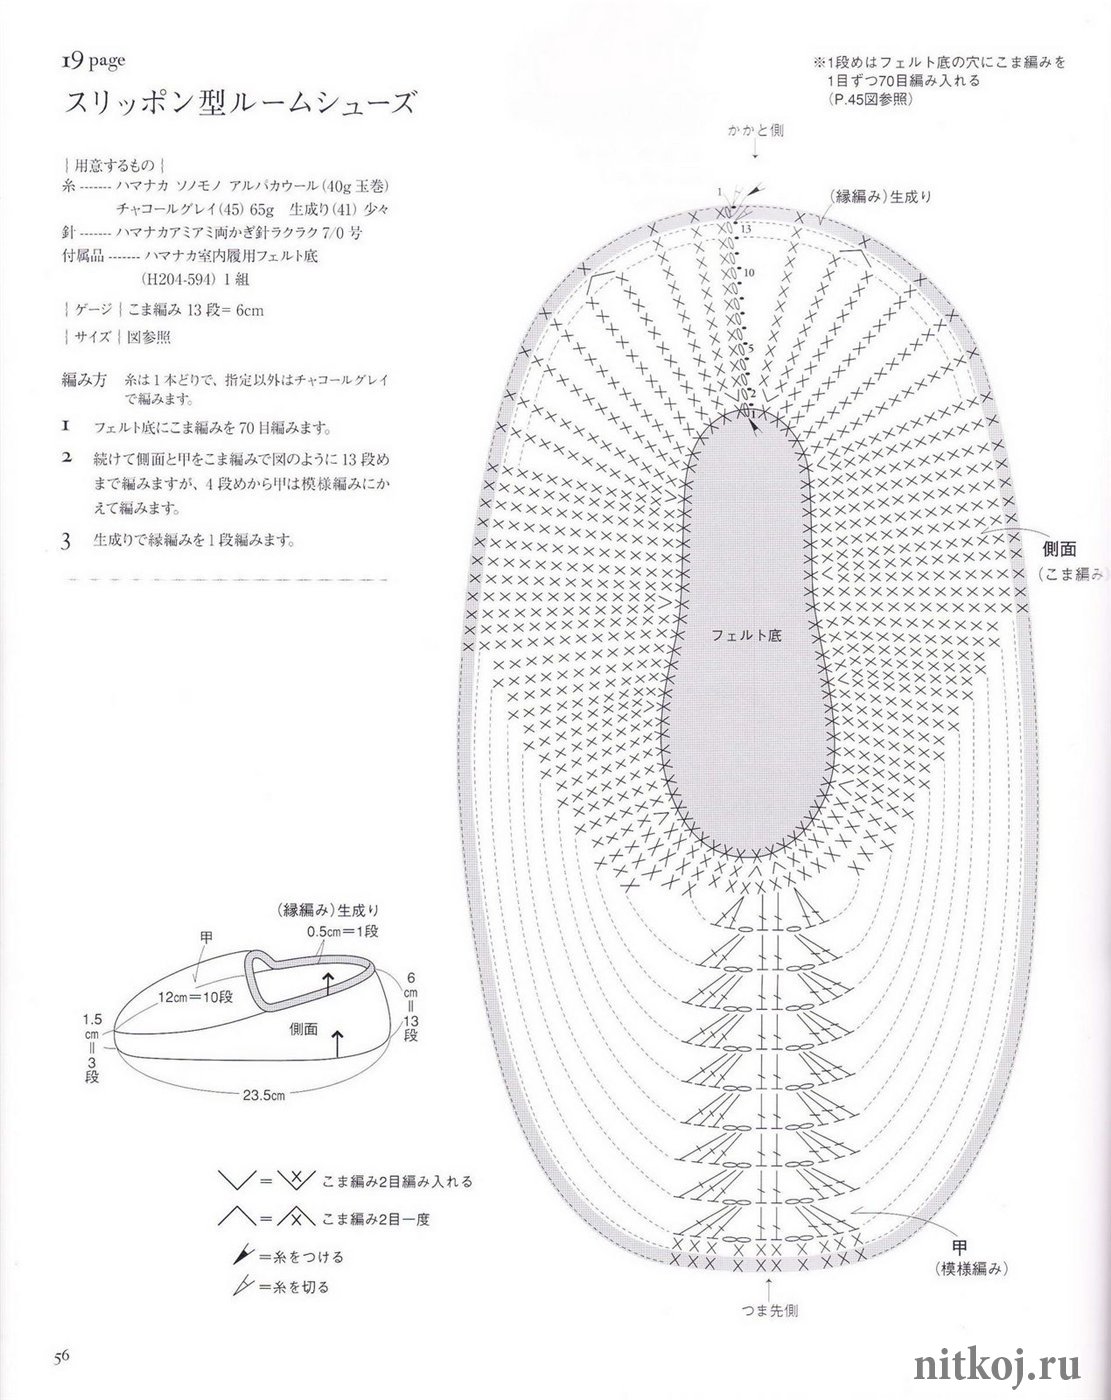 Тапочки крючком схемы с подробным описанием. Домашняя обувь крючком схемы.